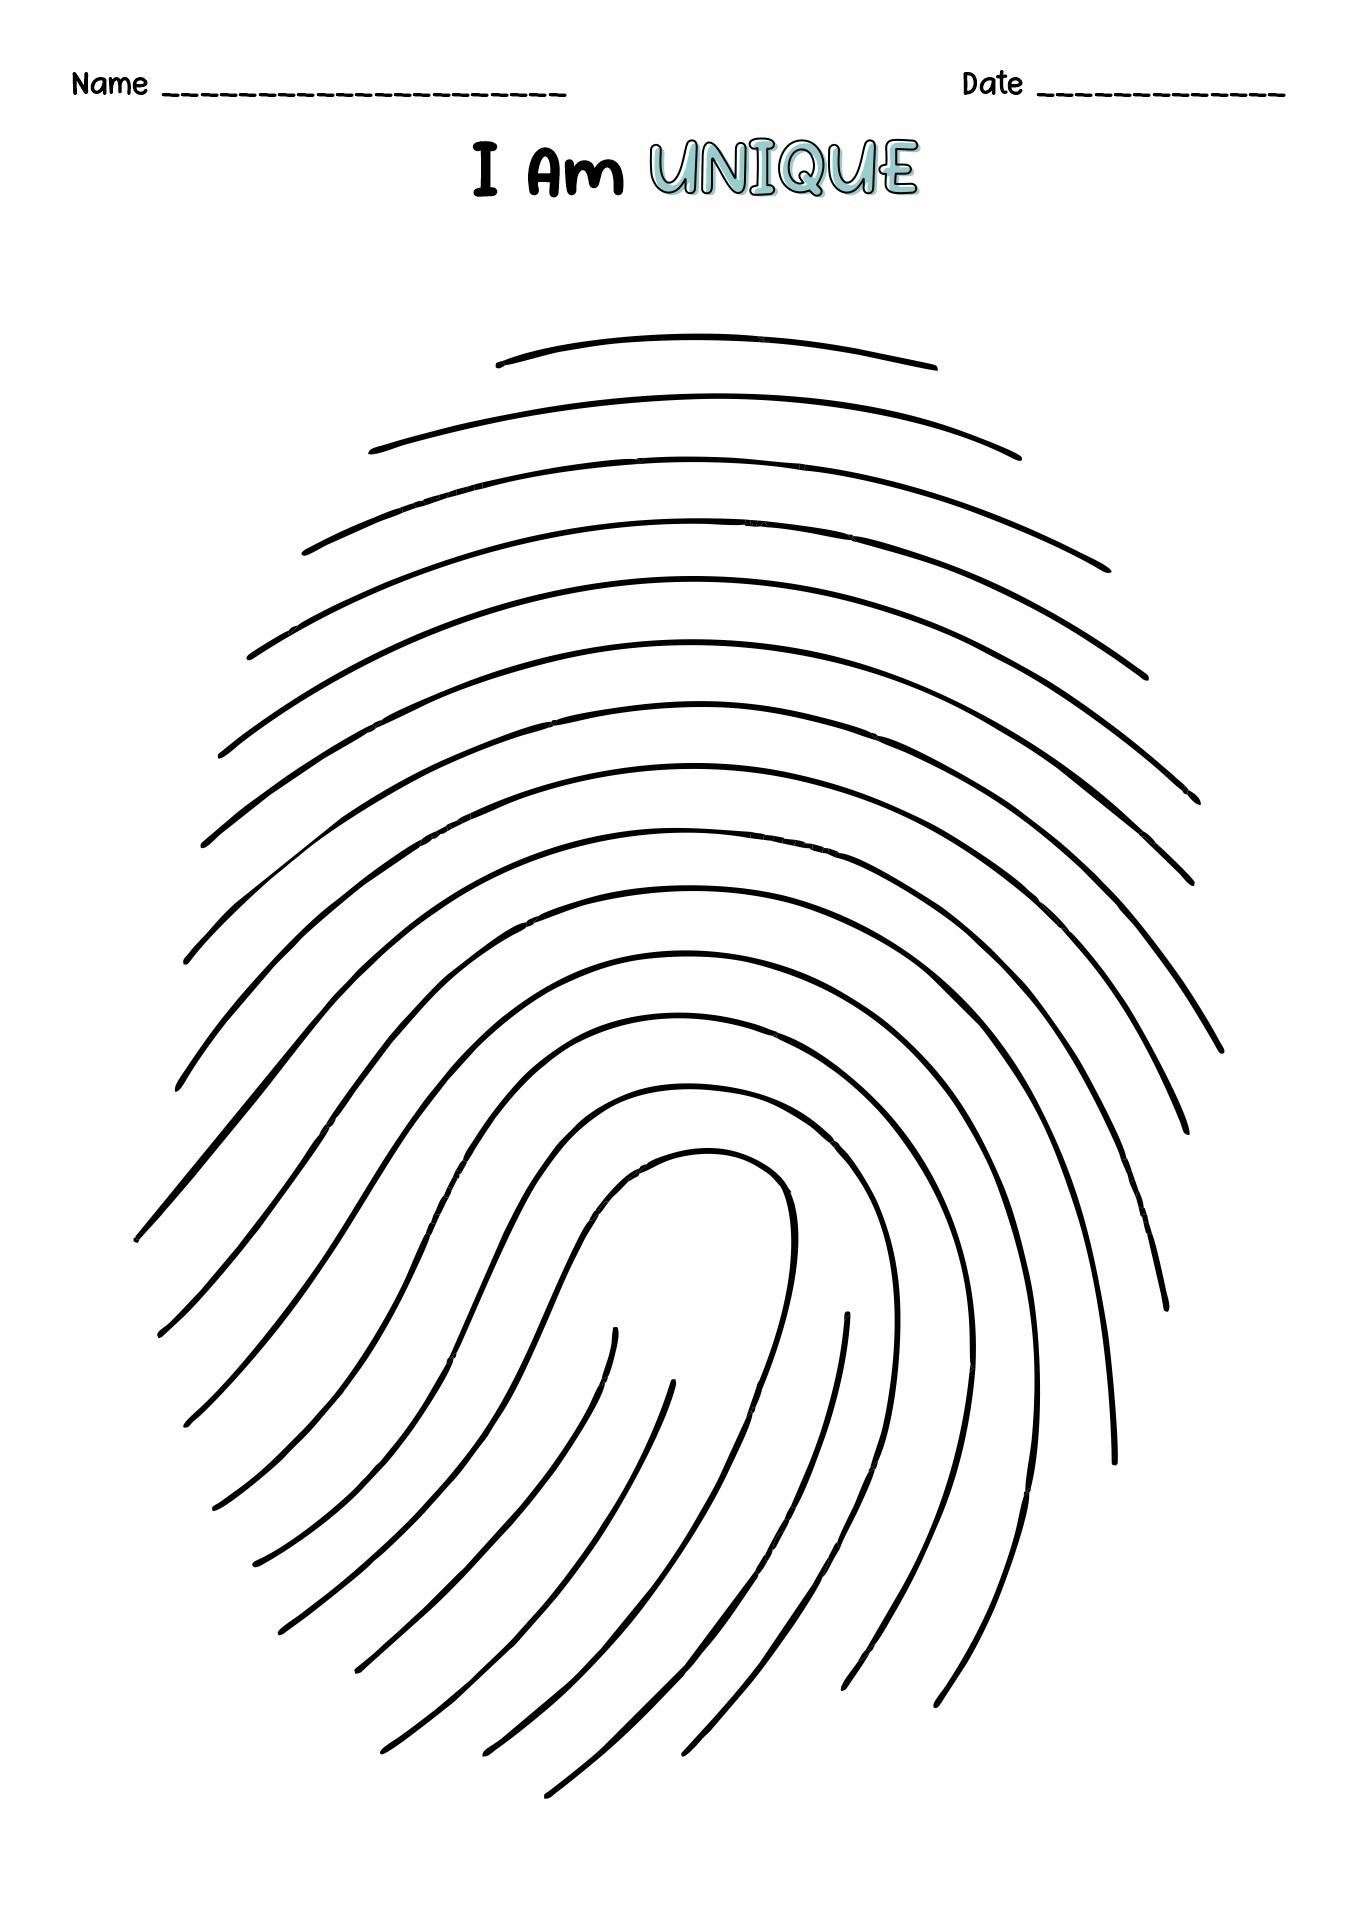 14-fingerprint-detective-worksheet-free-pdf-at-worksheeto